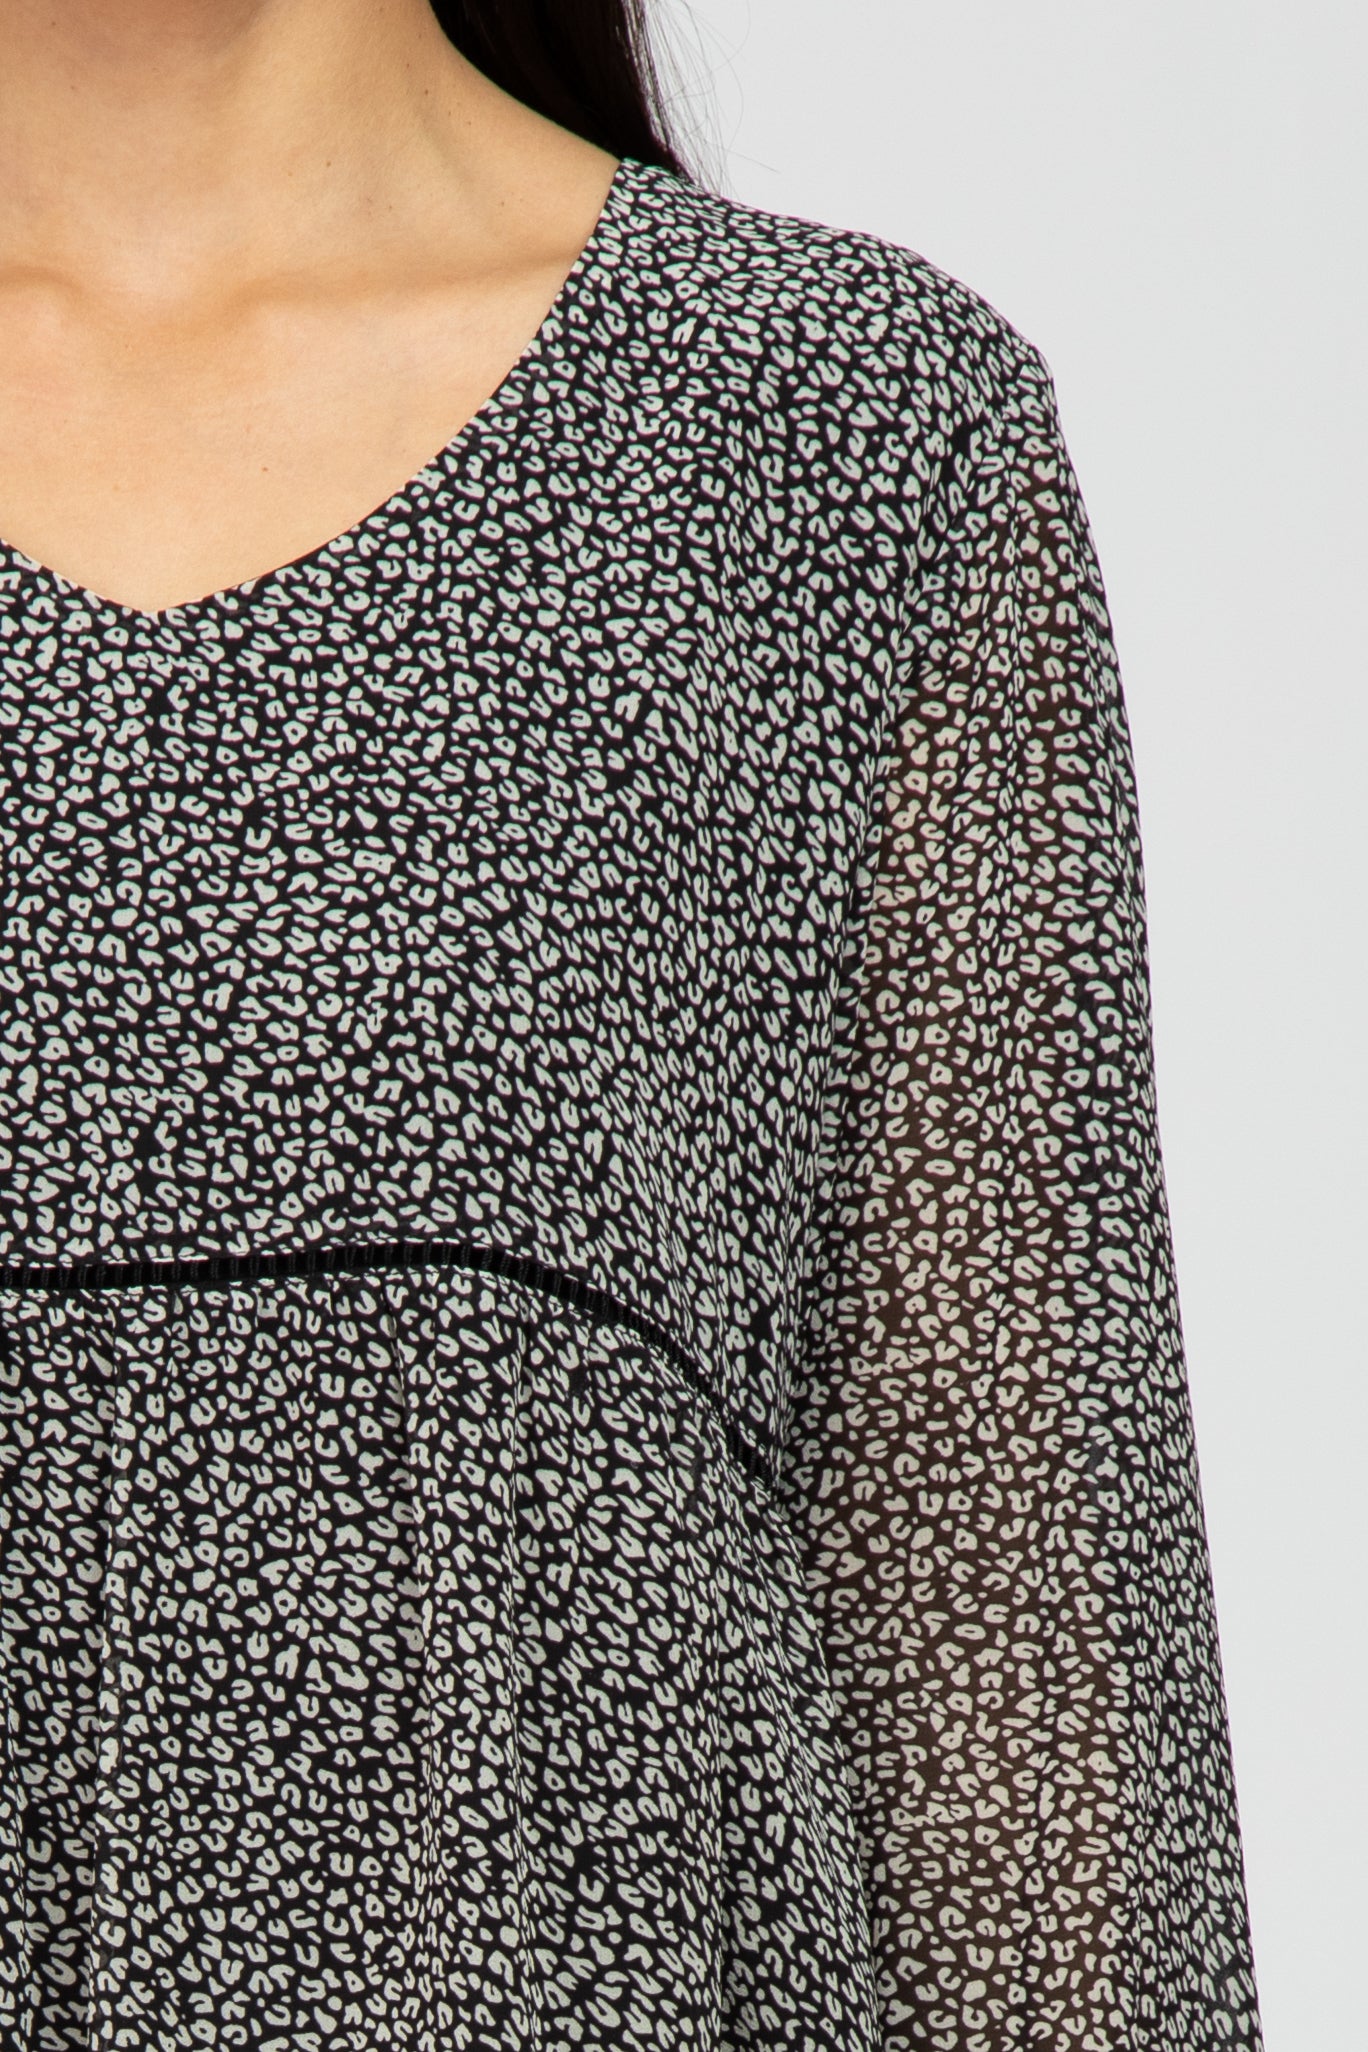 Black Leopard Print Tiered Dress